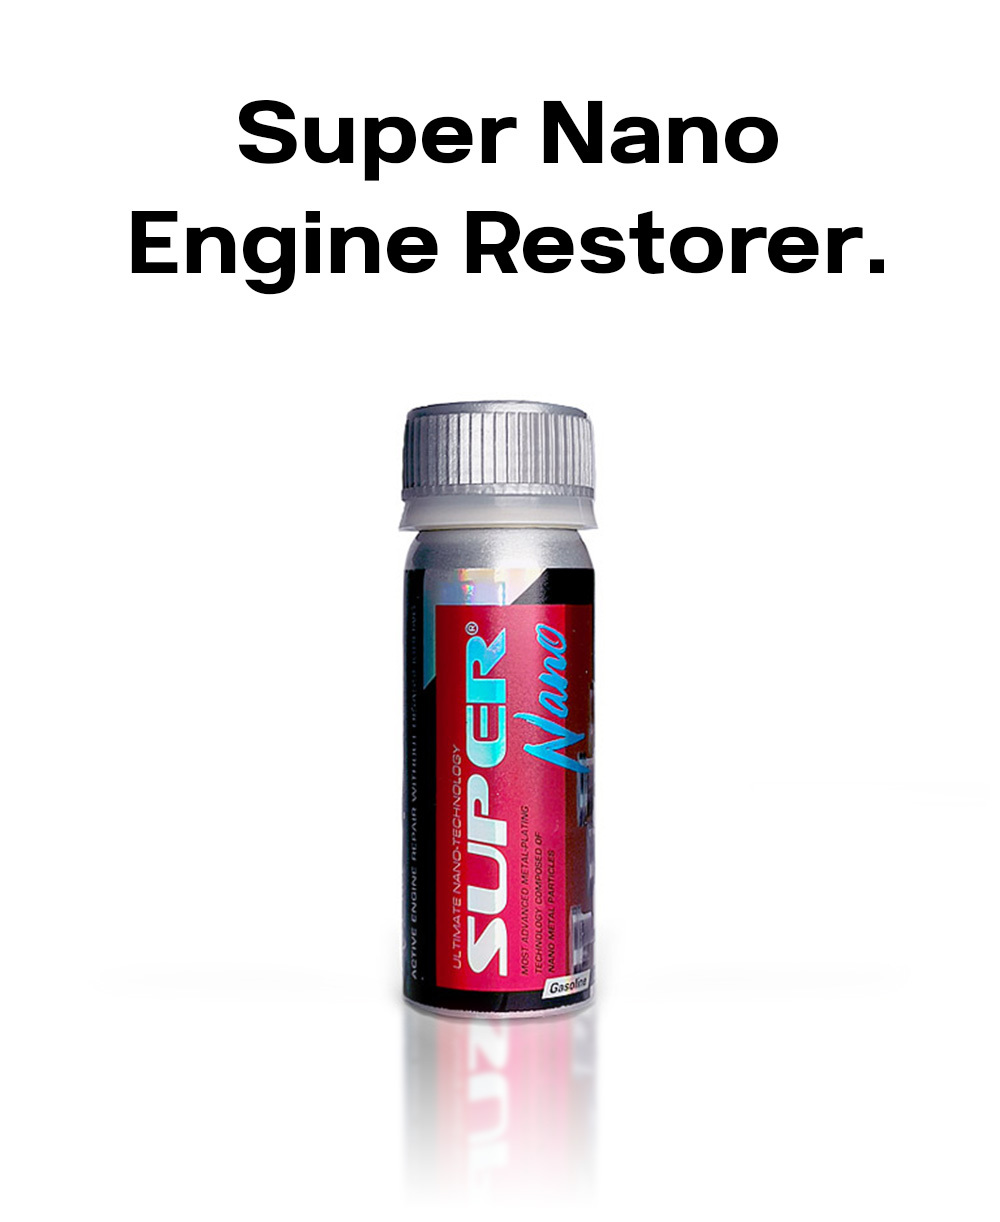 Super Nano Engine Restorer 50g